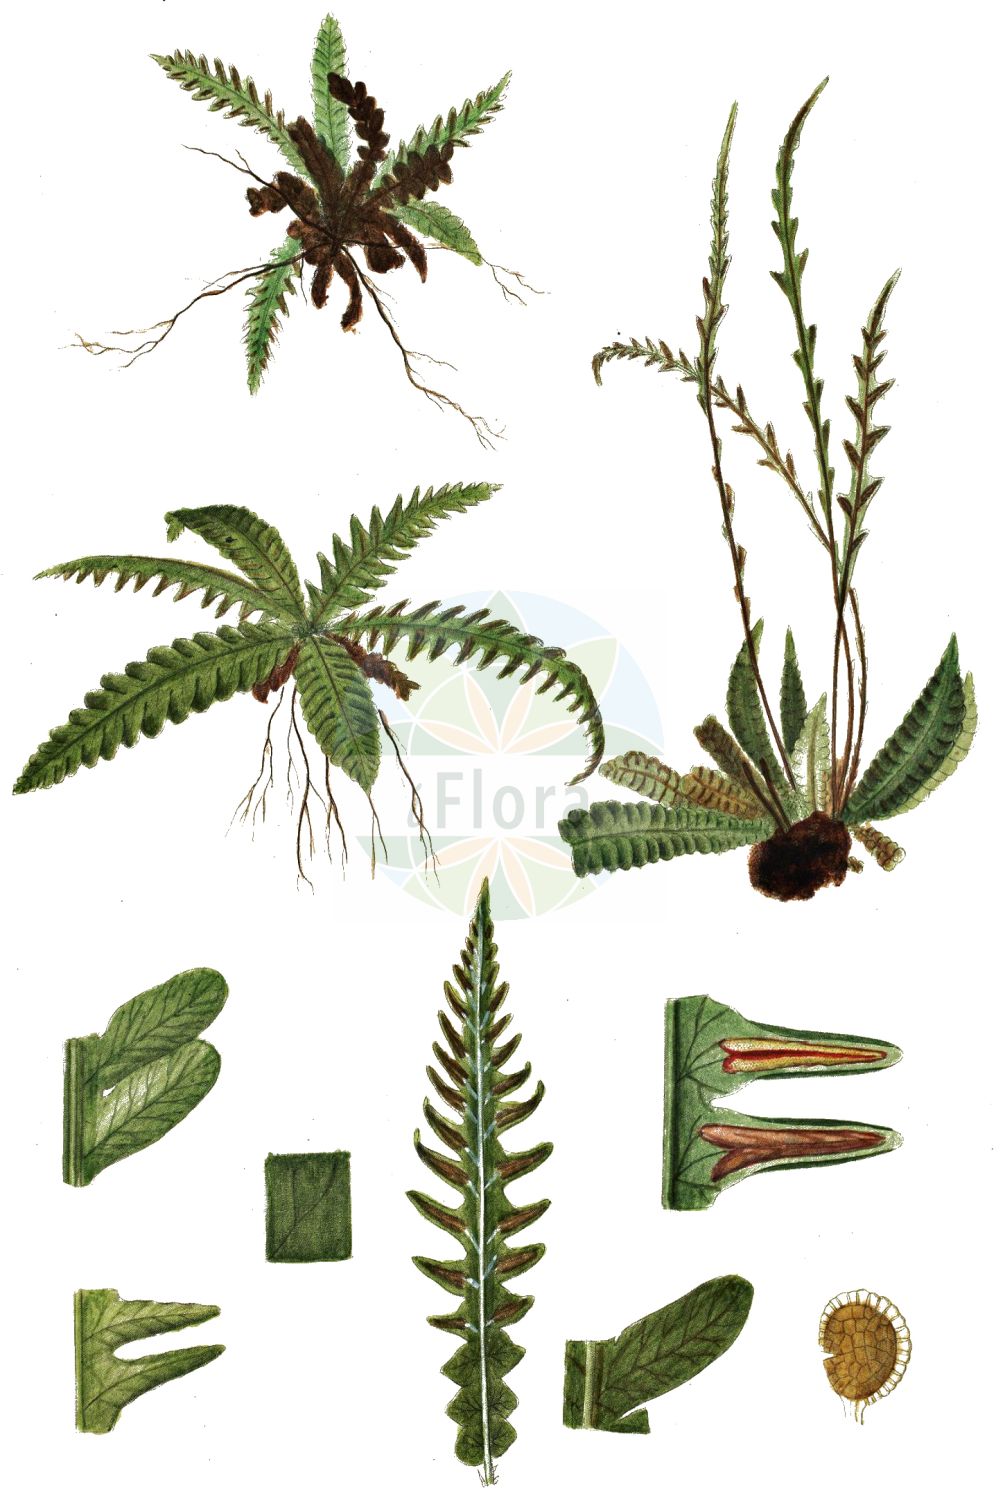 Historische Abbildung von Blechnum spicant (Rippenfarn - Hard-fern). Das Bild zeigt Blatt, Bluete, Frucht und Same. ---- Historical Drawing of Blechnum spicant (Rippenfarn - Hard-fern). The image is showing leaf, flower, fruit and seed.(Blechnum spicant,Rippenfarn,Hard-fern,Blechnum boreale,Blechnum homophyllum,Lomaria spicant,Osmunda spicant,Blechnum spicant,Rippenfarn,Hard-fern,Deer Fern,Blechnum,Rippenfarn,Hard Fern,Blechnaceae,Rippenfarngewächse,Hard Fern family,Blatt,Bluete,Frucht,Same,leaf,flower,fruit,seed,Oeder (1761-1883))